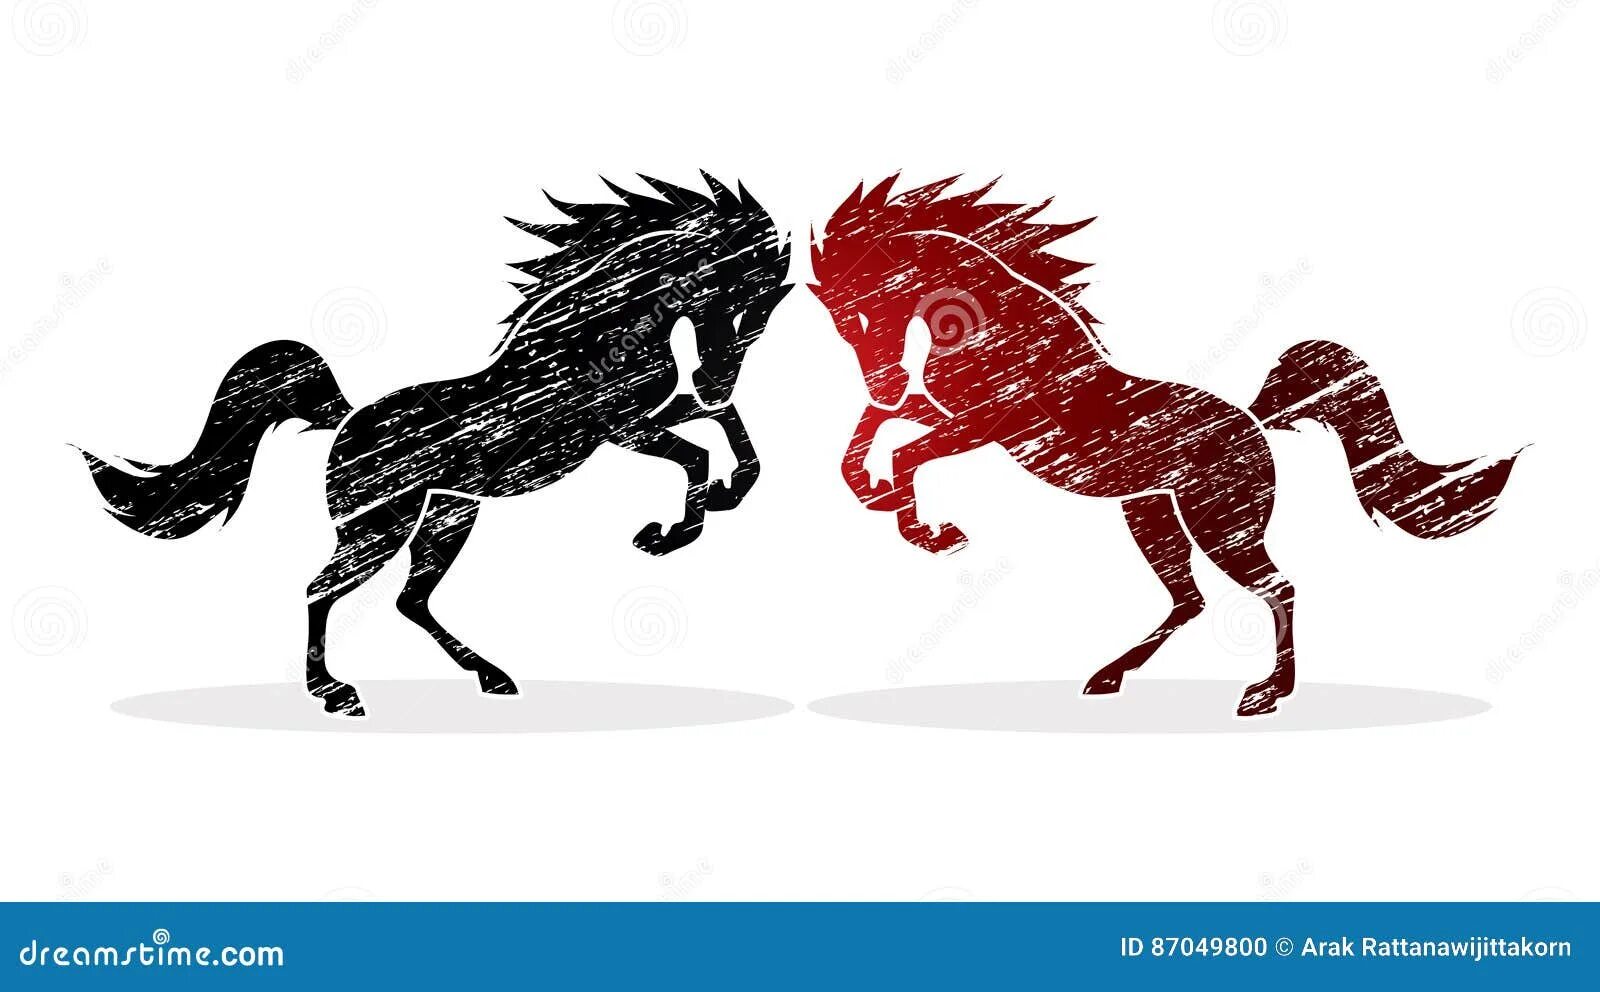 Близнецы, год лошадь,. Лошади Близнецы. Лошадь в графике рисунок. Лого близнец лошадь.